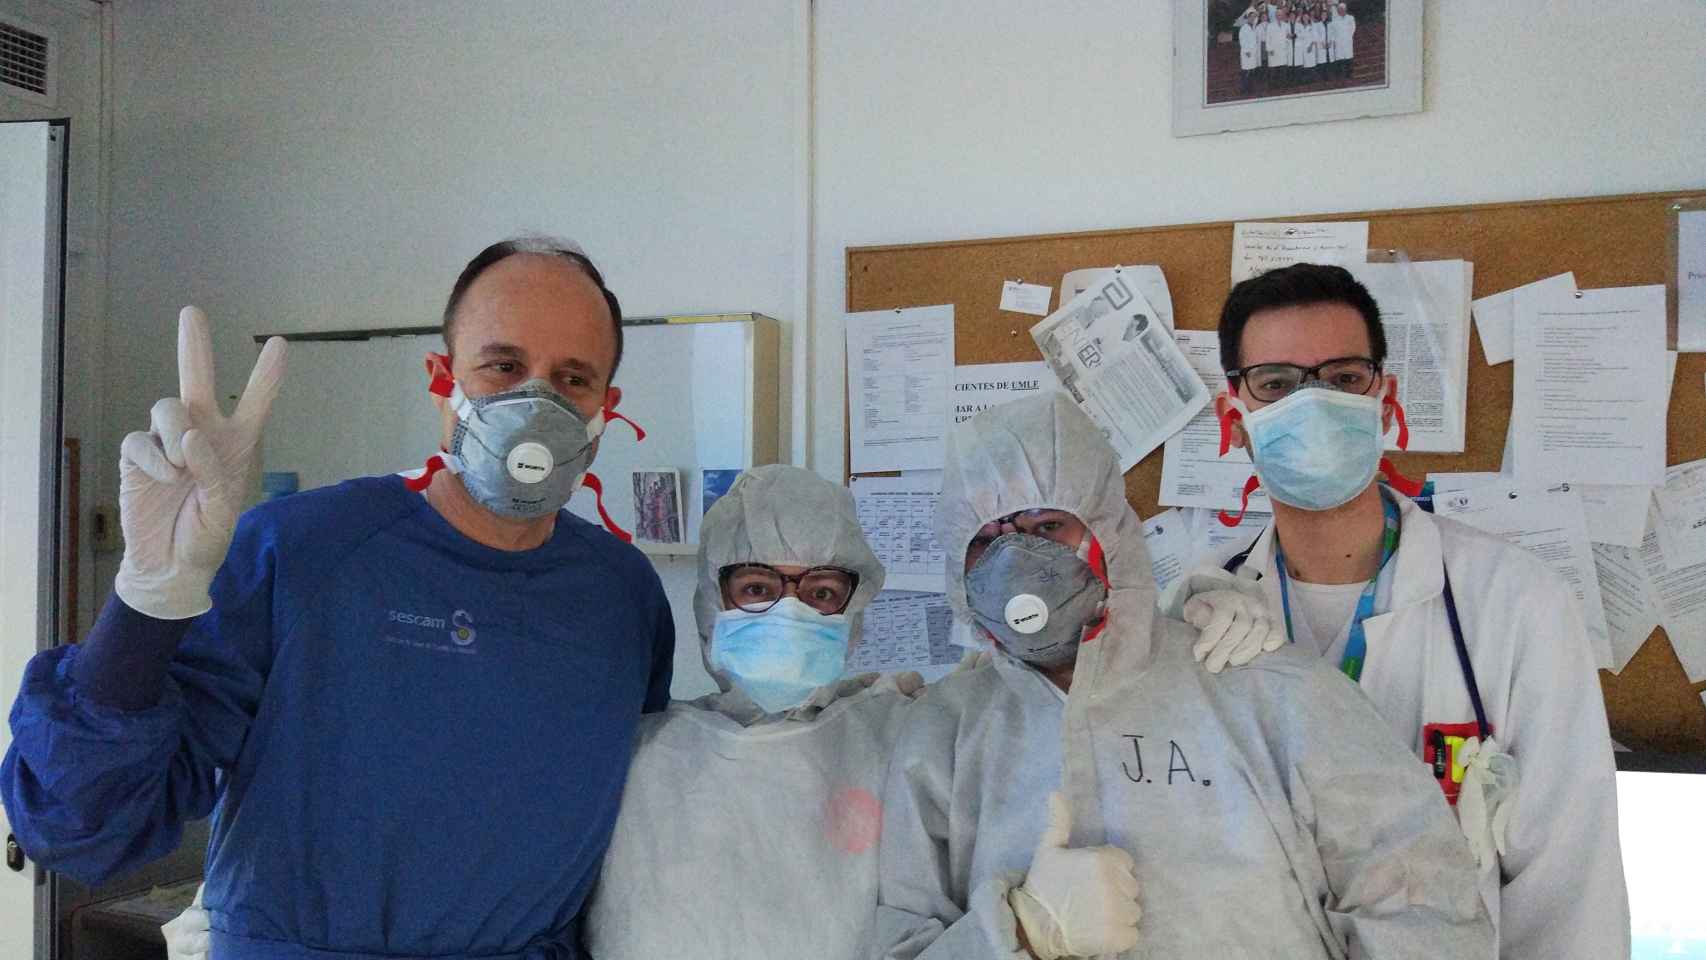 Tomás Segura (de azul, a la izquierda), junto a su equipo en neurología en el Hospital de Albacete.